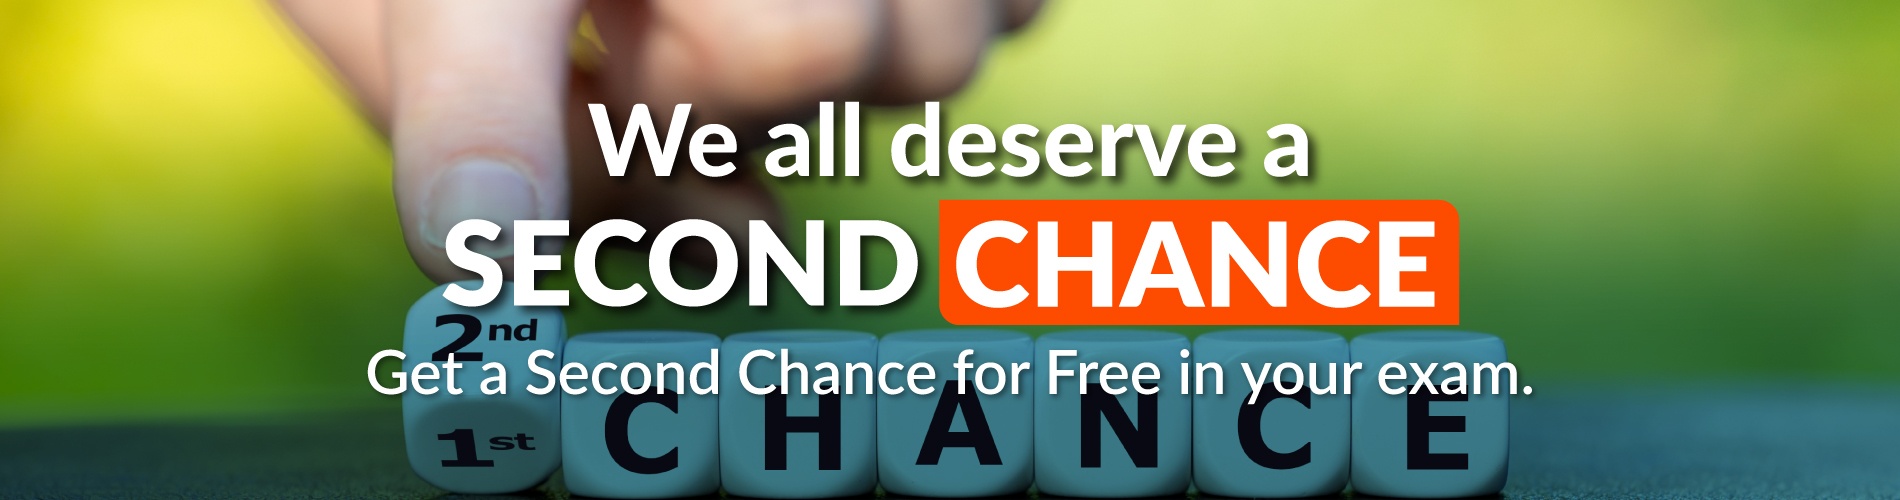 Second Chance, herhangi bir sertifika almak için sınava giren ancak yine de geçmek için gerekli puanı alması gereken adaylara ikinci bir fırsat sunmak ve becerilerini güçlendirme şansı vermek için yaratılmıştır.